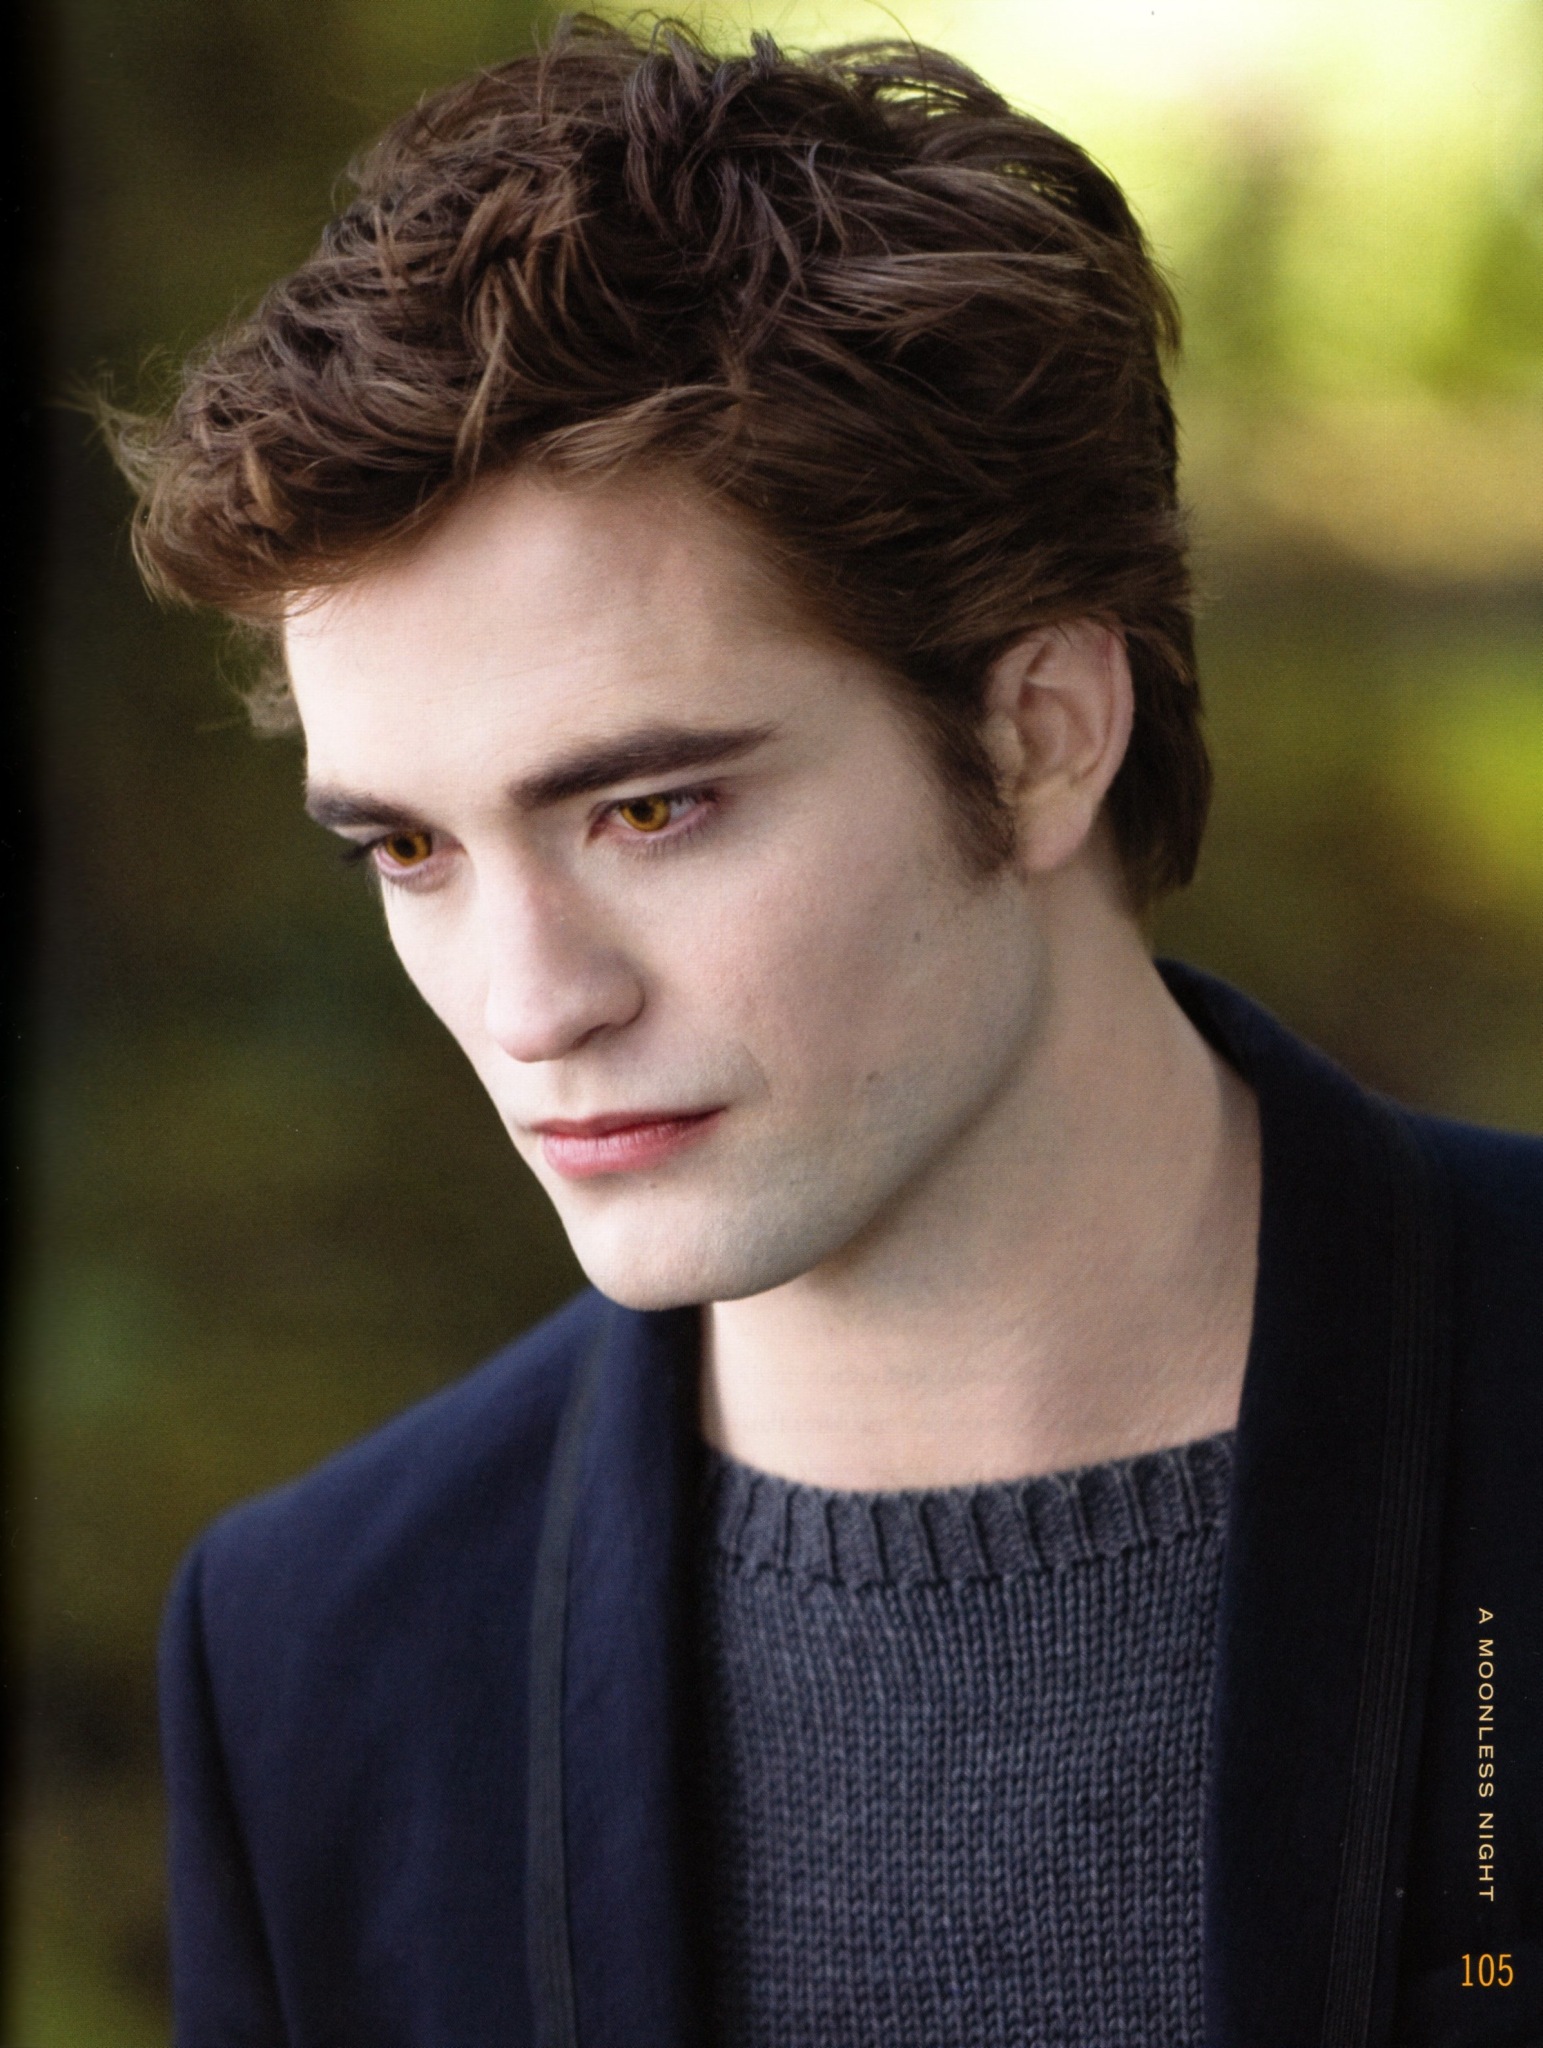 Edward Cullen - Twilight Saga Wiki